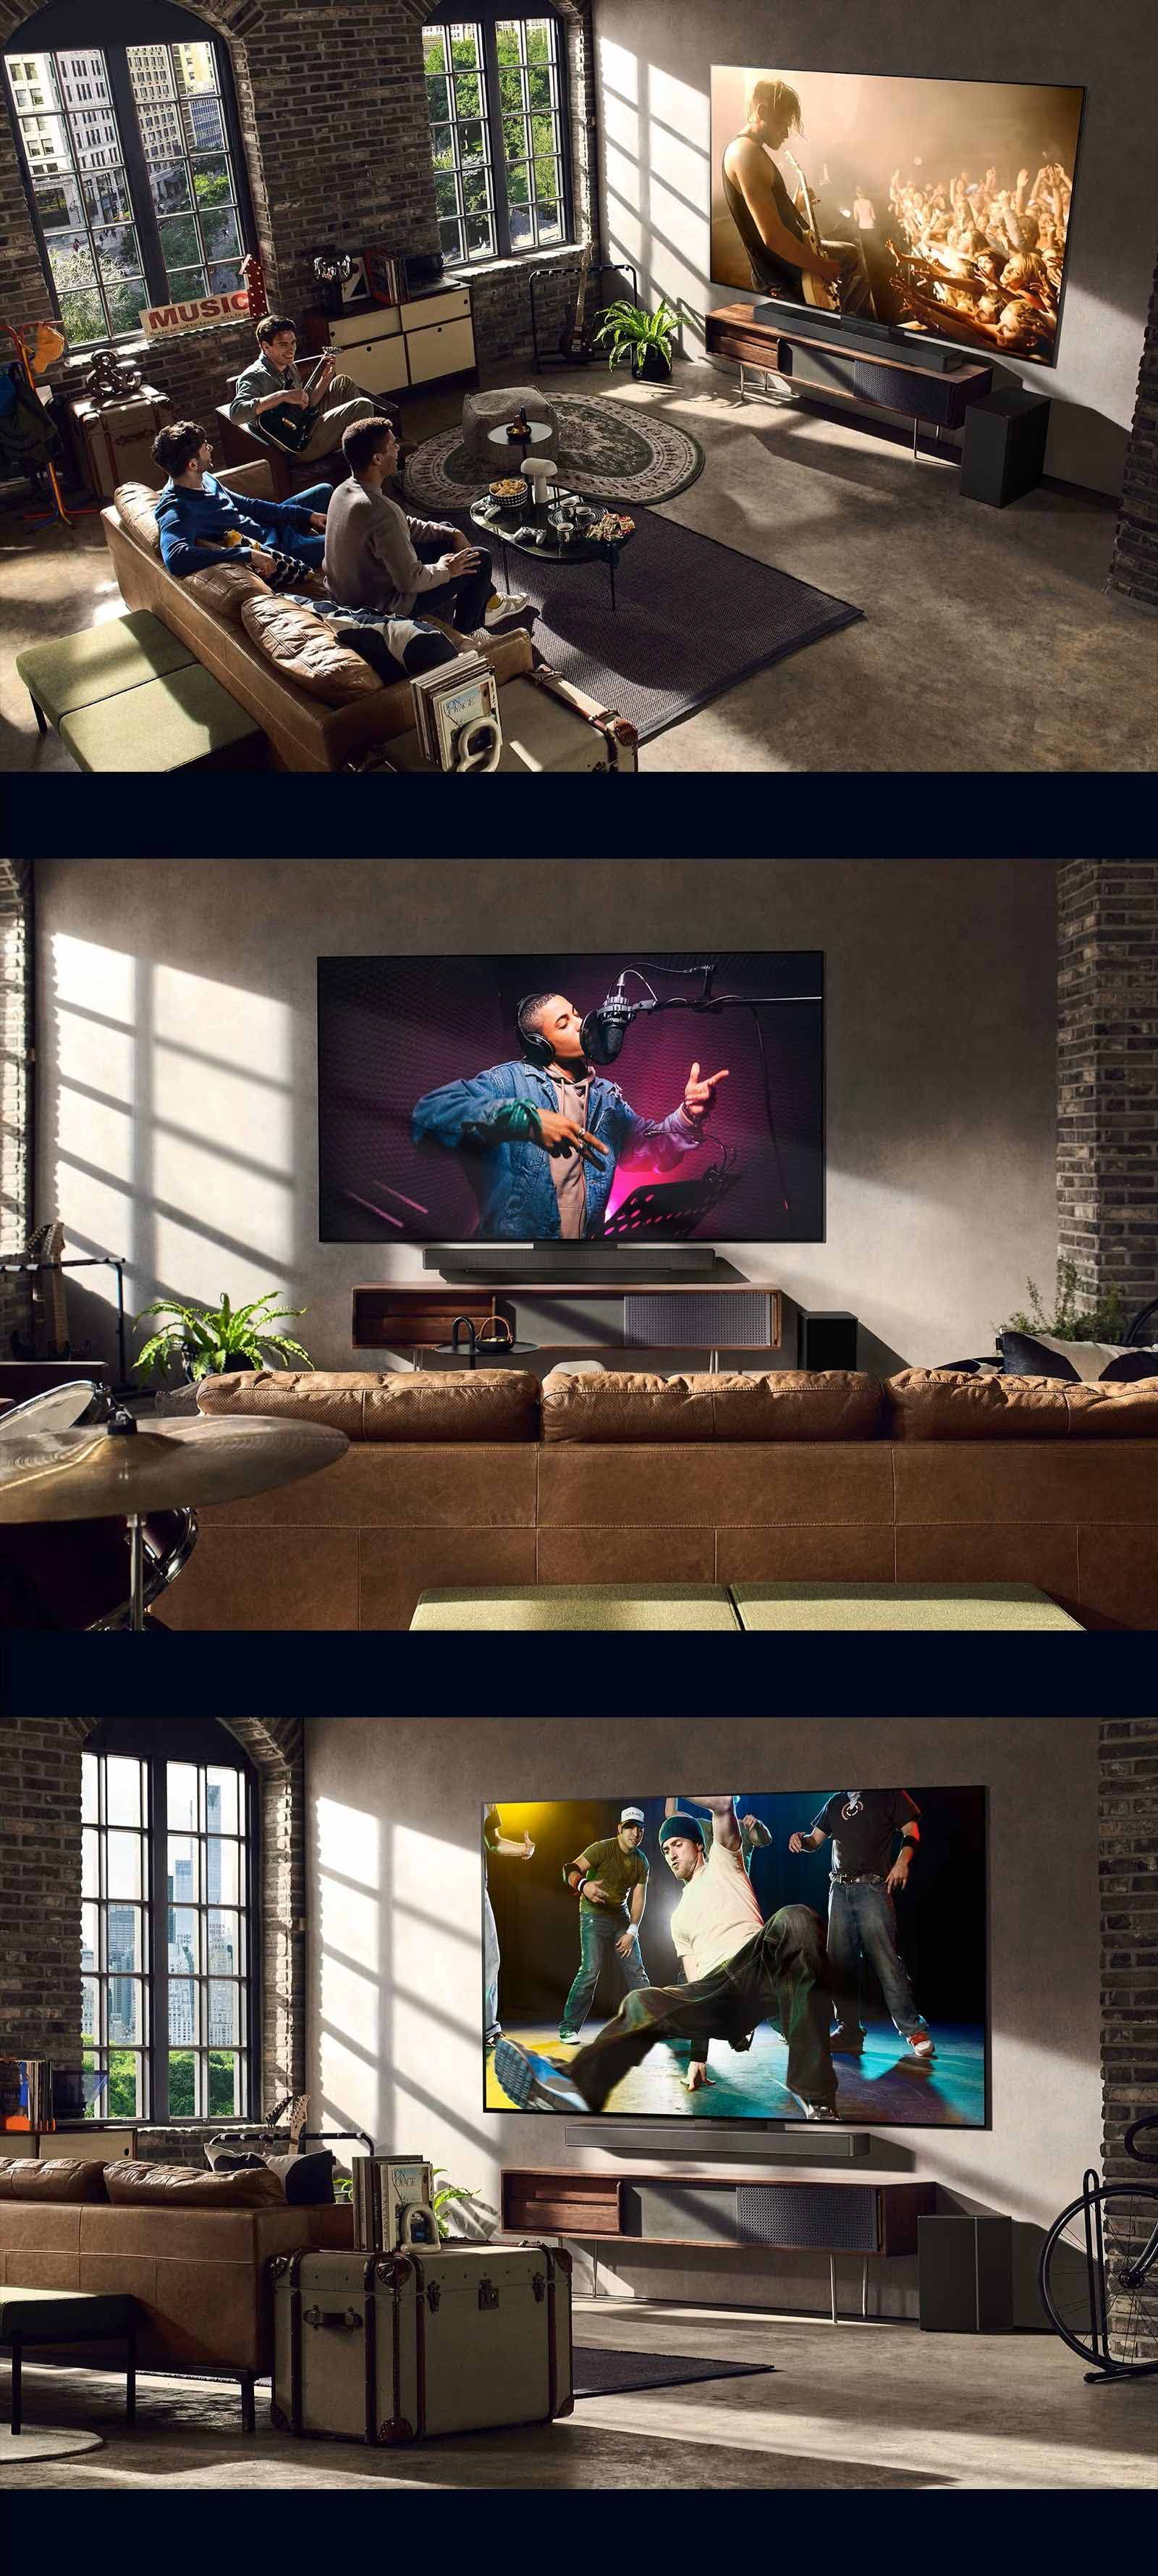 三個生活風格圖片。從上到下：三個男人在客廳欣賞音樂會的影片。牆上有一台 LG 電視顯示著音樂錄製場景、牆上的 LG 電視播放著霹靂舞場景的斜視圖。